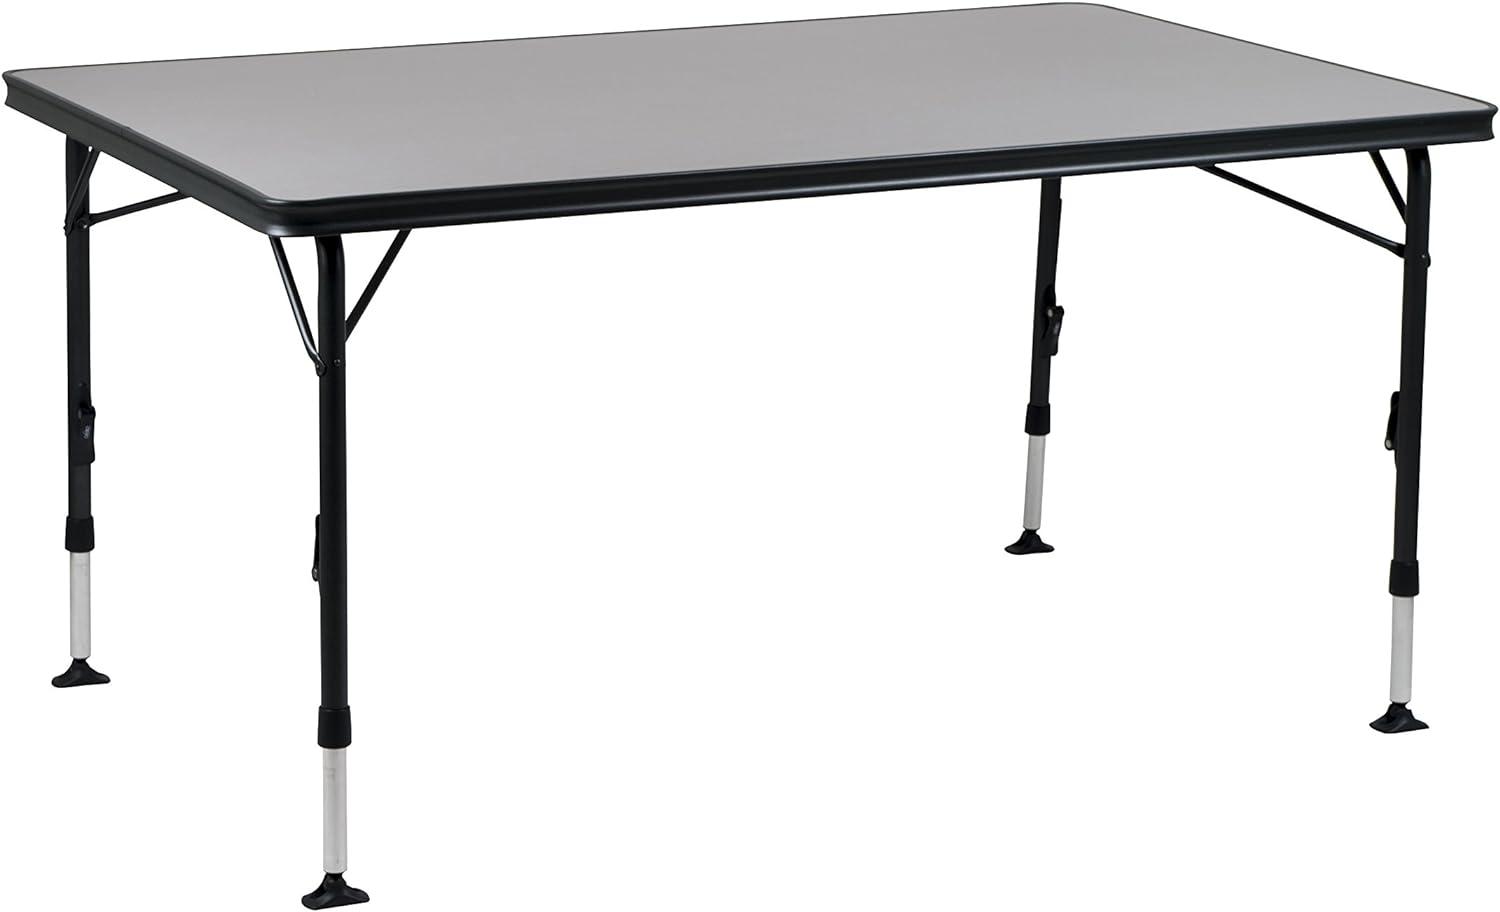 Crespo 1151420 CR ap-274 Tisch, Aluminium, schwarz, 150 x 90 cm Bild 1